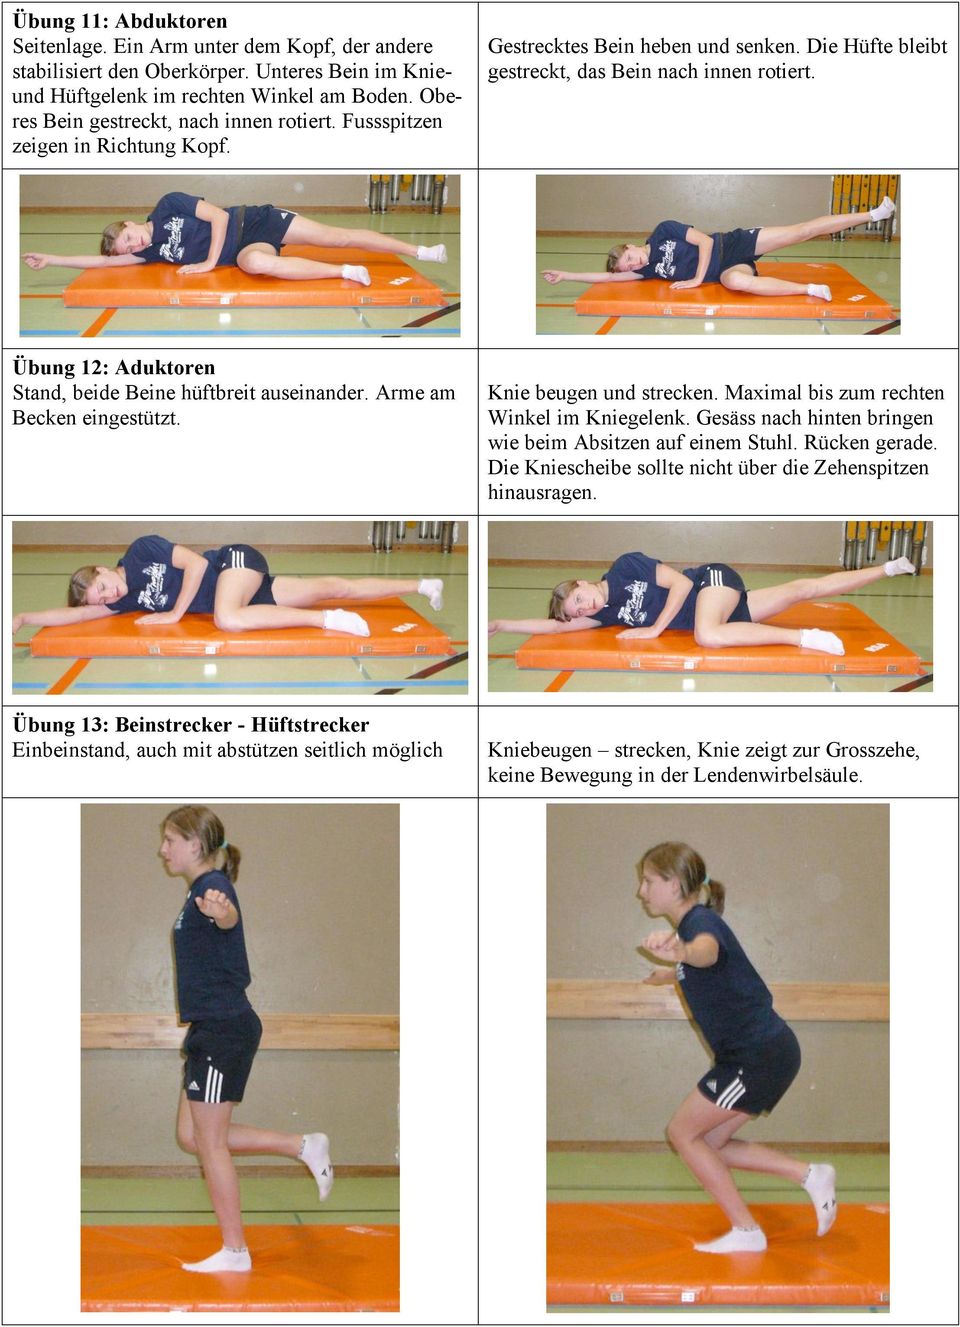 Übung 12: Aduktoren Stand, beide Beine hüftbreit auseinander. Arme am Becken eingestützt. Knie beugen und strecken. Maximal bis zum rechten Winkel im Kniegelenk.